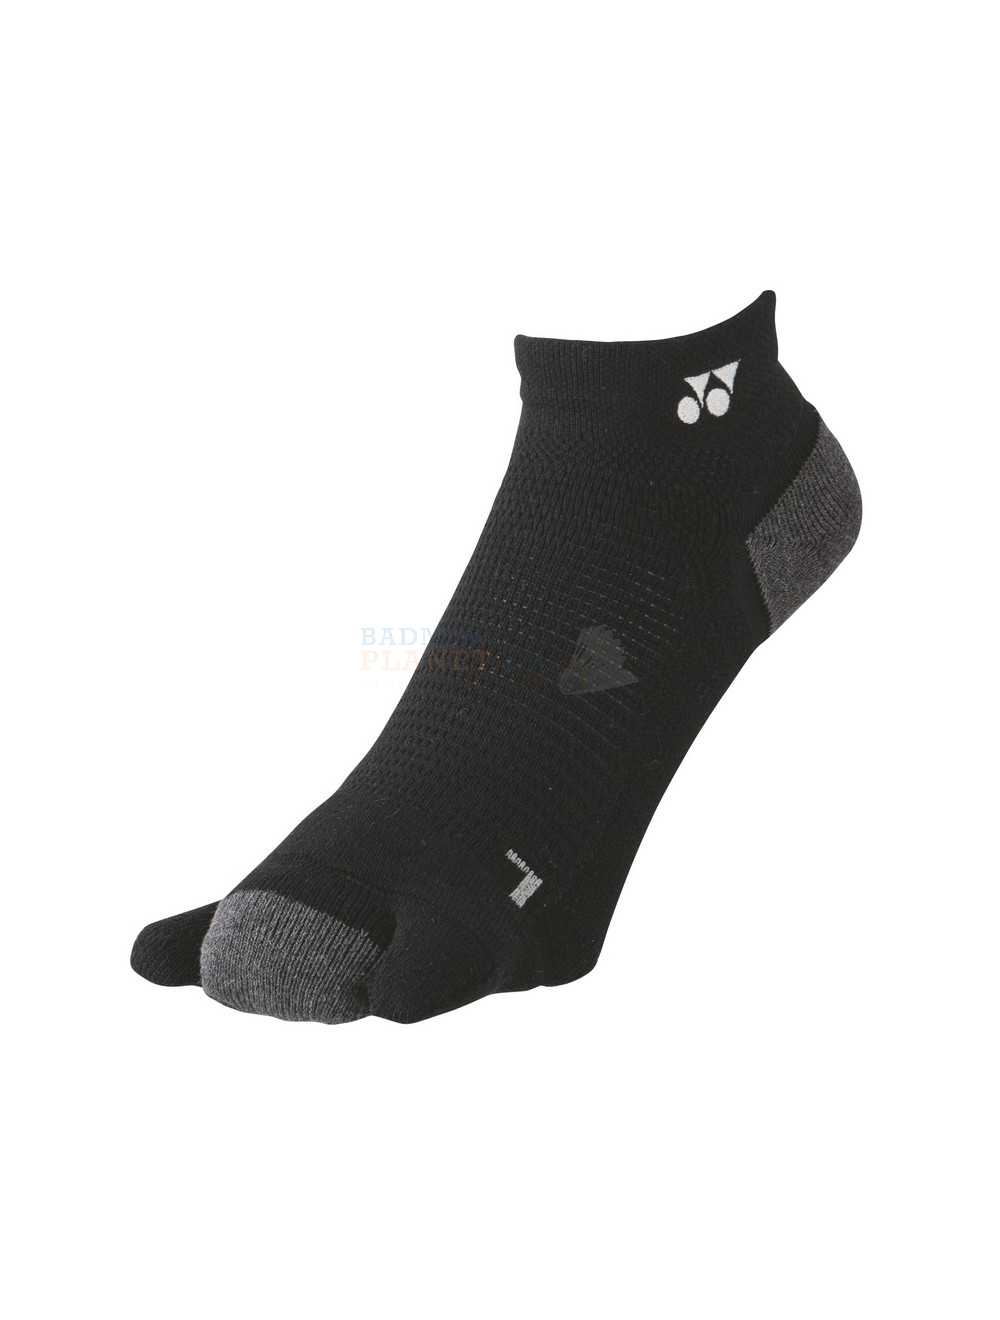 Yonex 3D Low Cut Sock 19170 Black - Badmintonplanet.eu